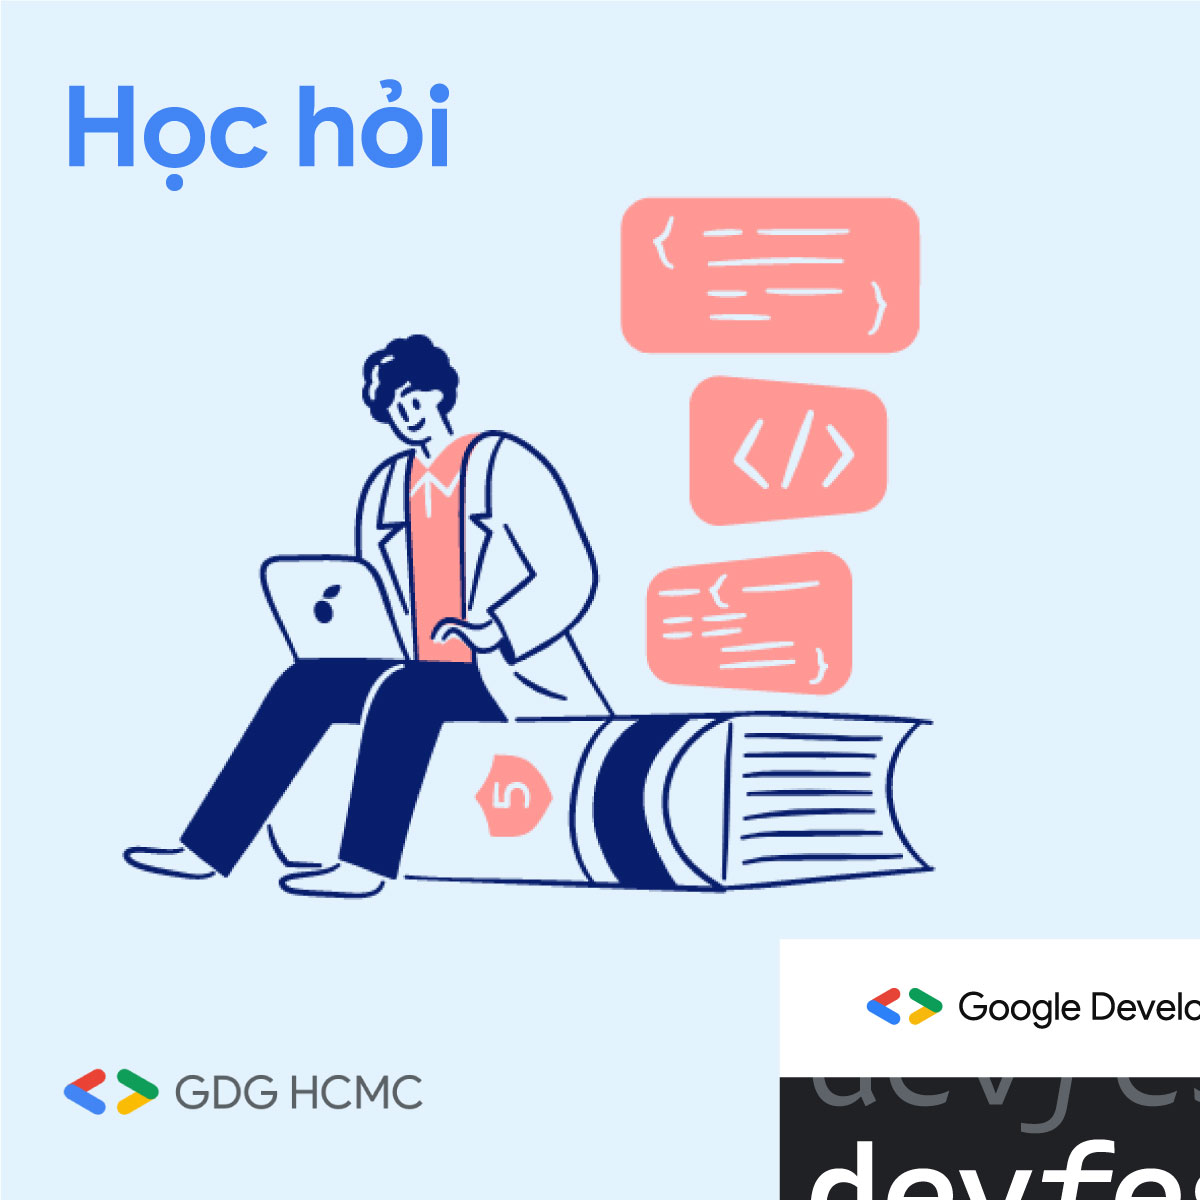 Google Developers Group DevFest HCMC 2021: Kỳ hội học hỏi và tranh tài dành riêng cho người yêu thích công nghệ